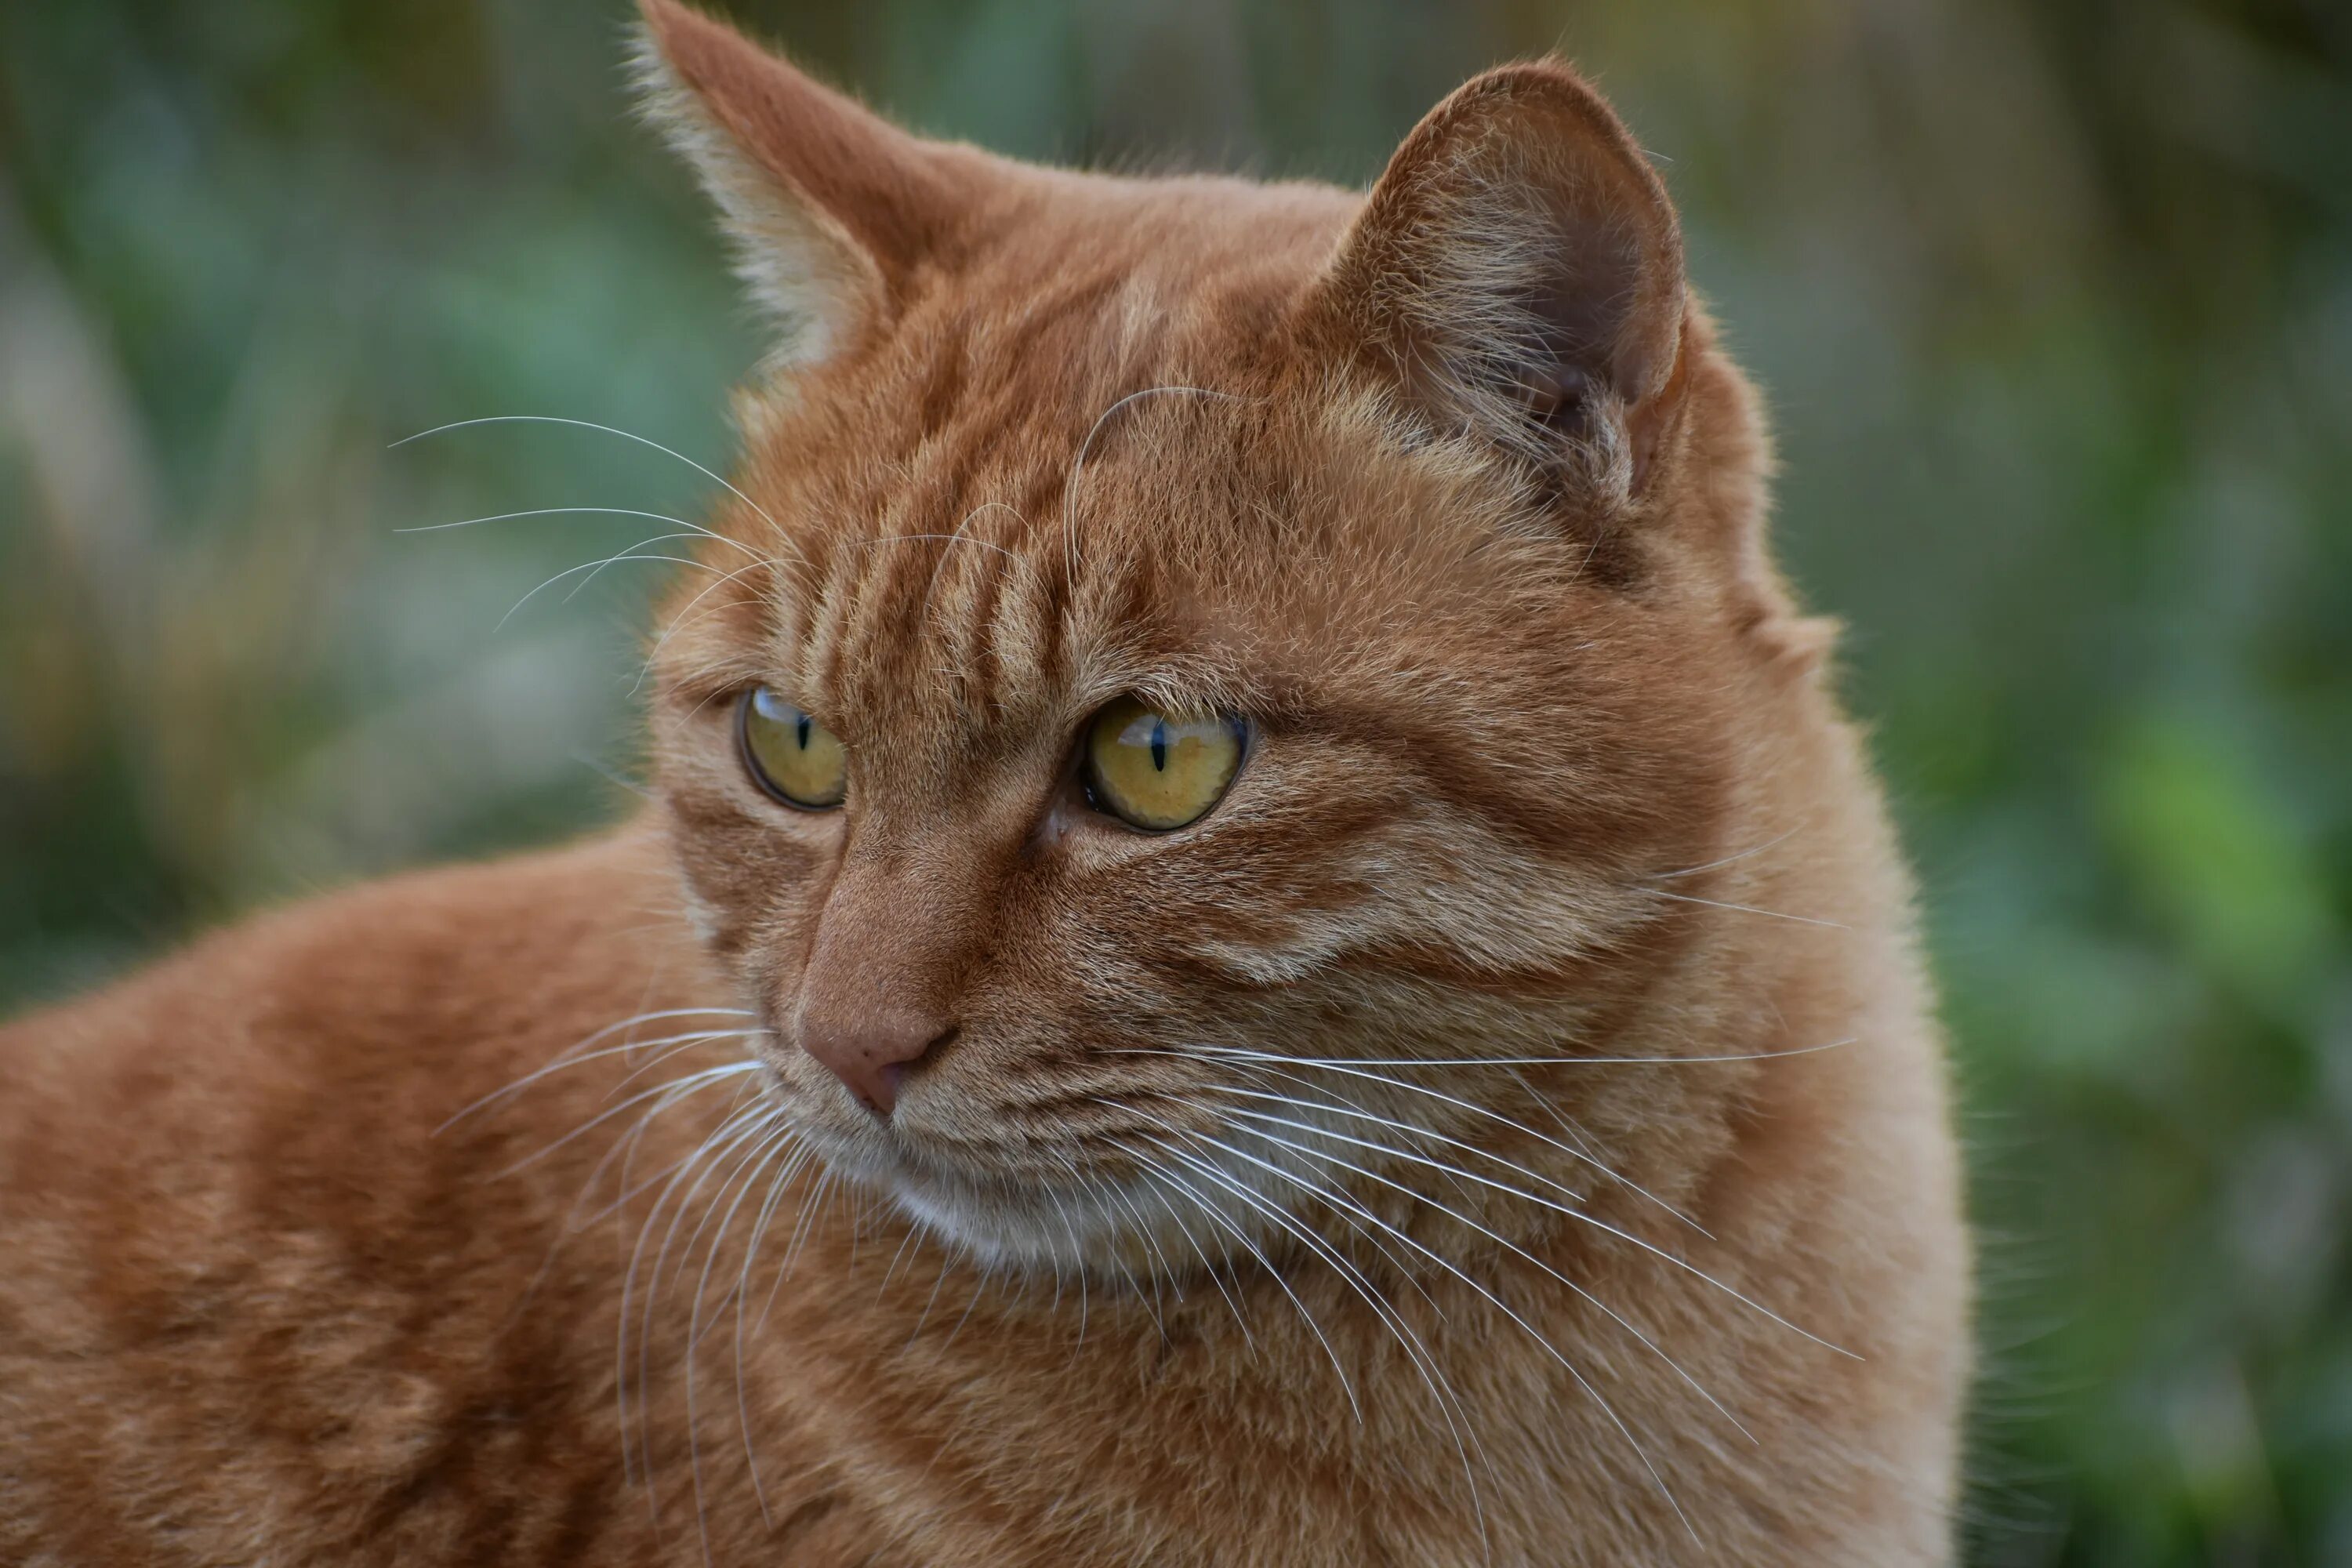 Европейская короткошерстная кошка рыжая. Европейский короткошерстный кот рыжий. Камышовый кот рыжий. Бразильская короткошерстная кошка рыжая. Рыжик язык